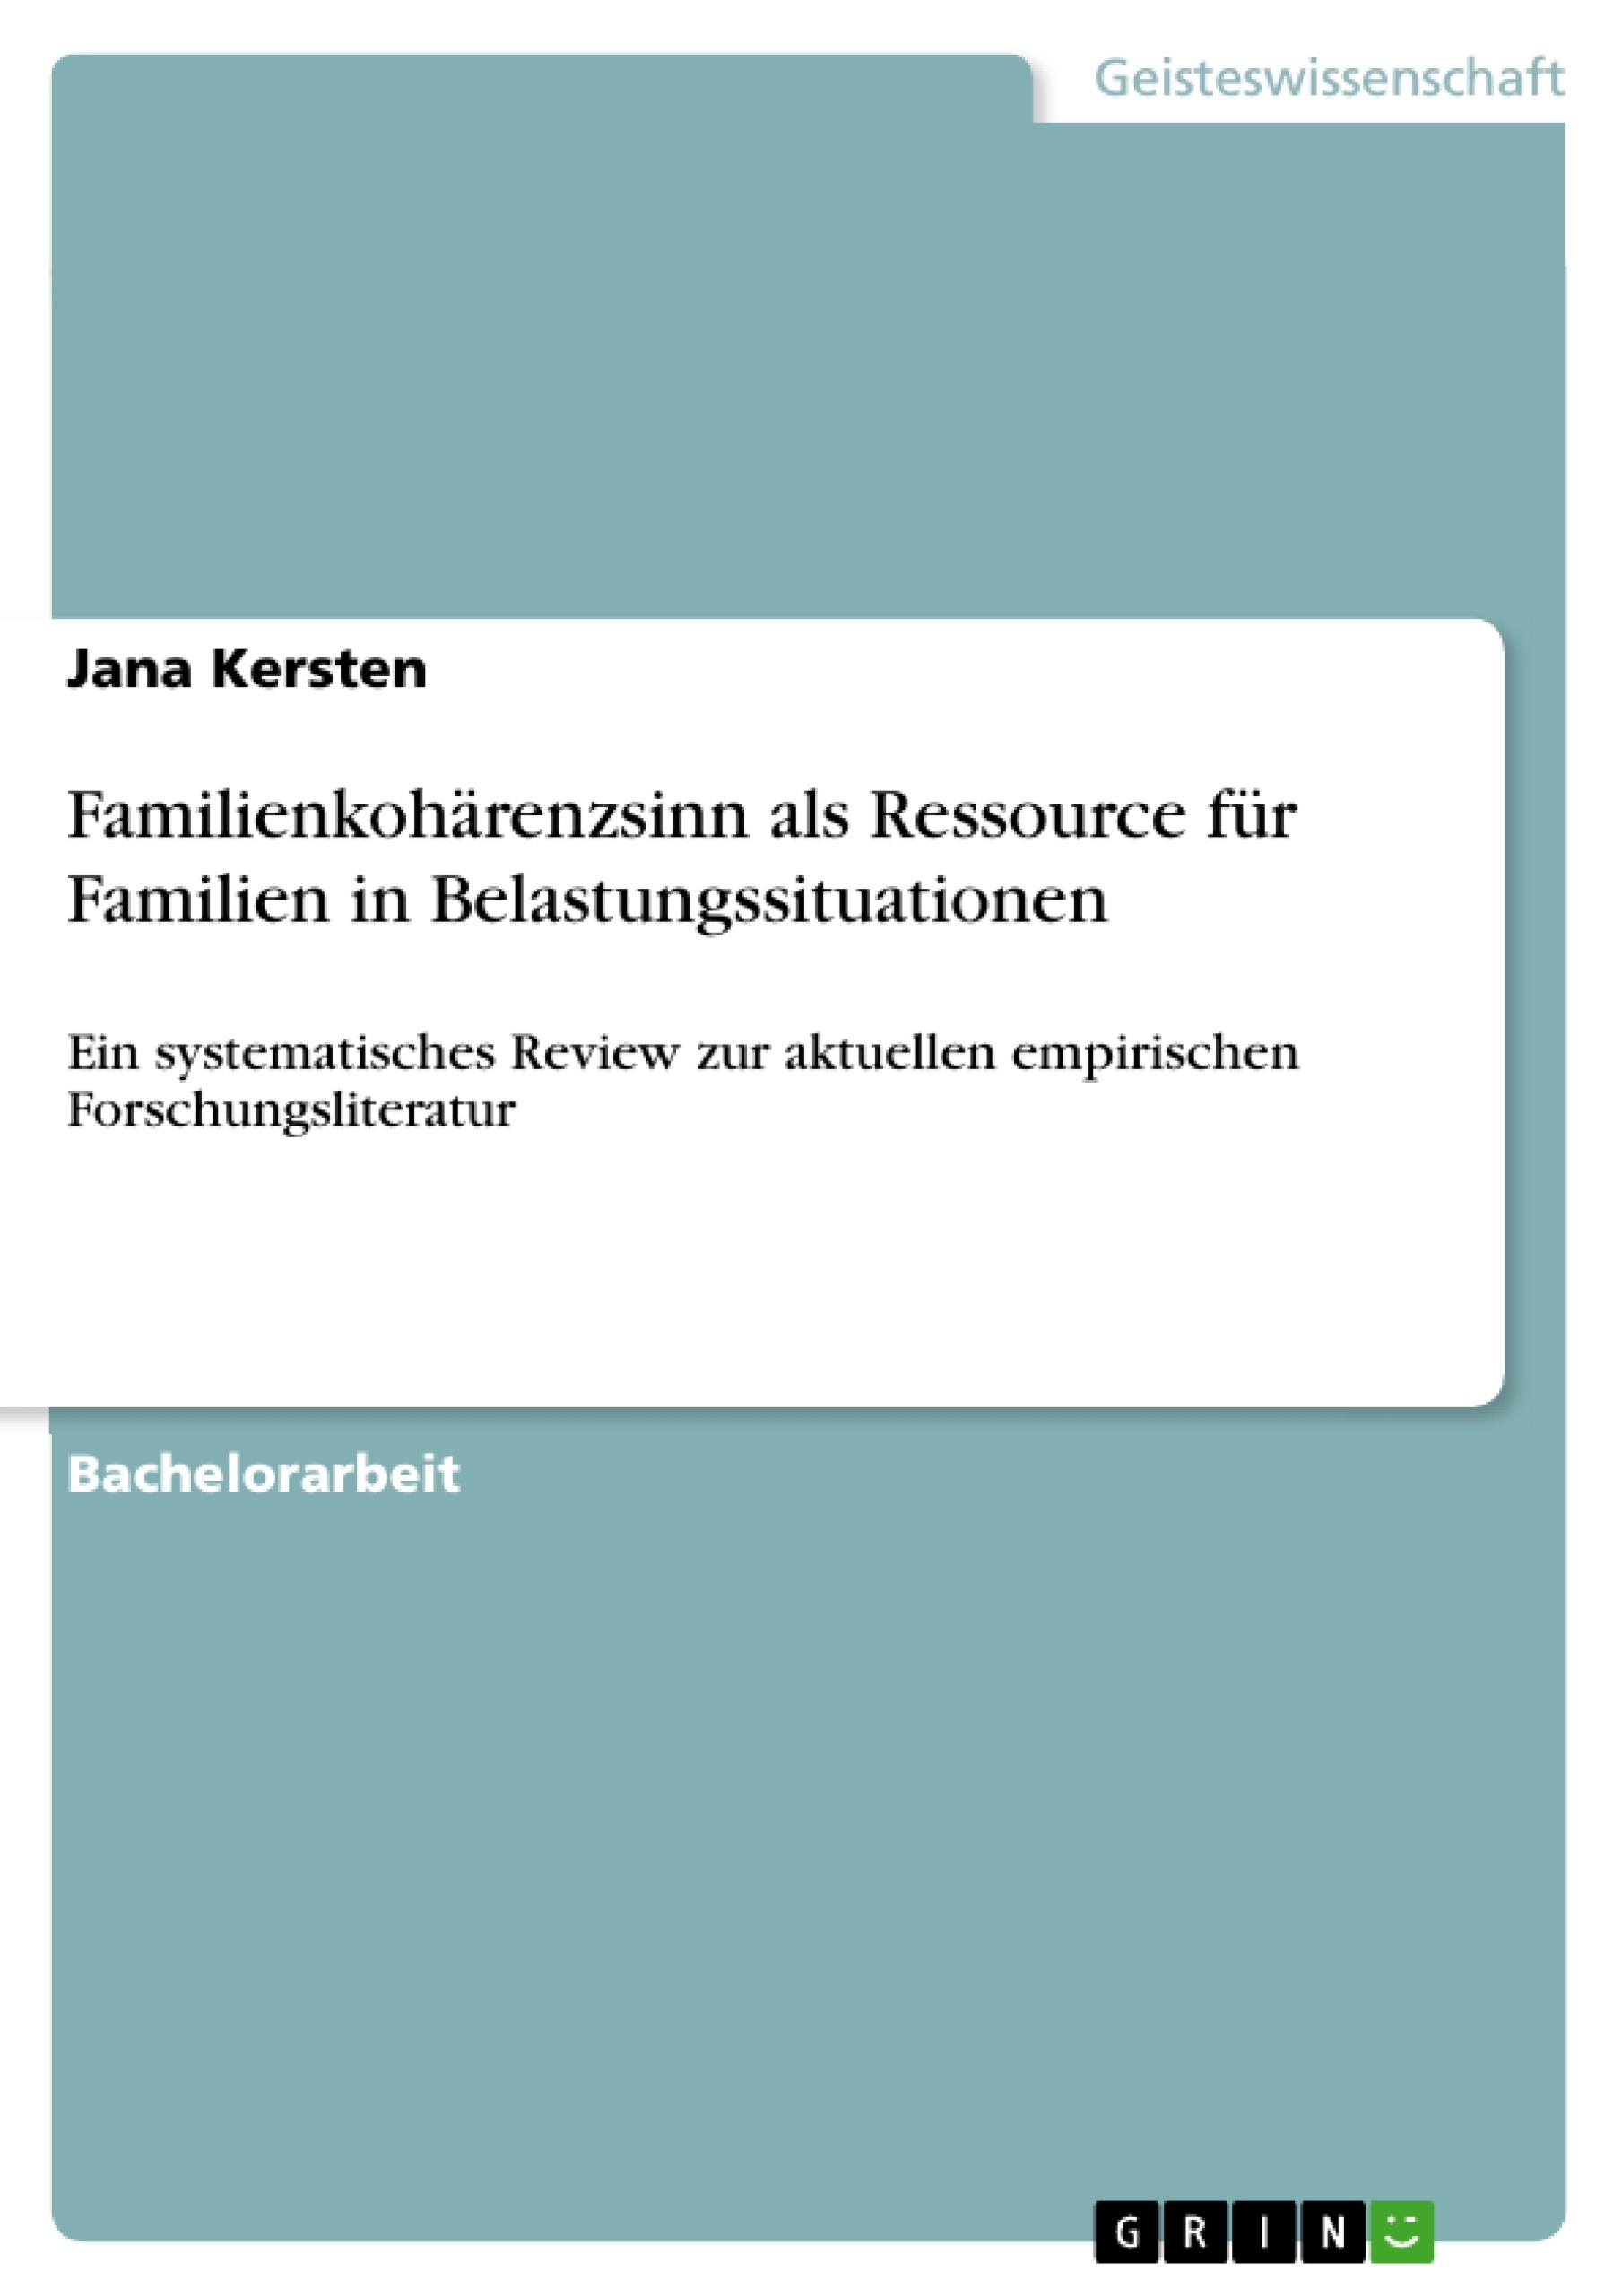 Title: Familienkohärenzsinn als Ressource für Familien in Belastungssituationen